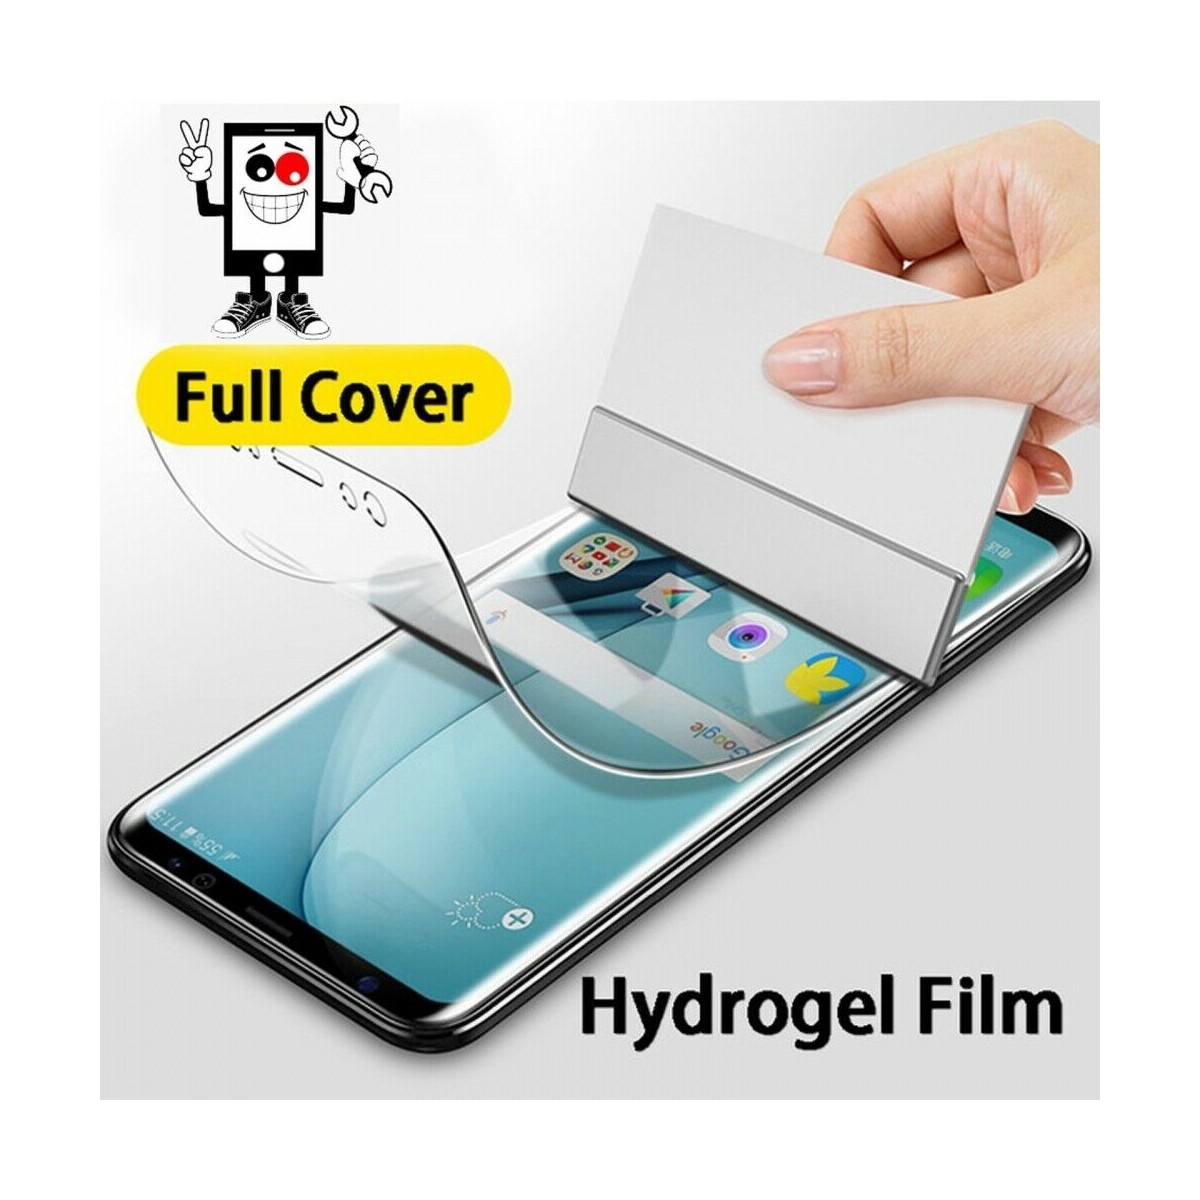 Protector Trasero Autorreparable de Hidrogel para Samsung A9